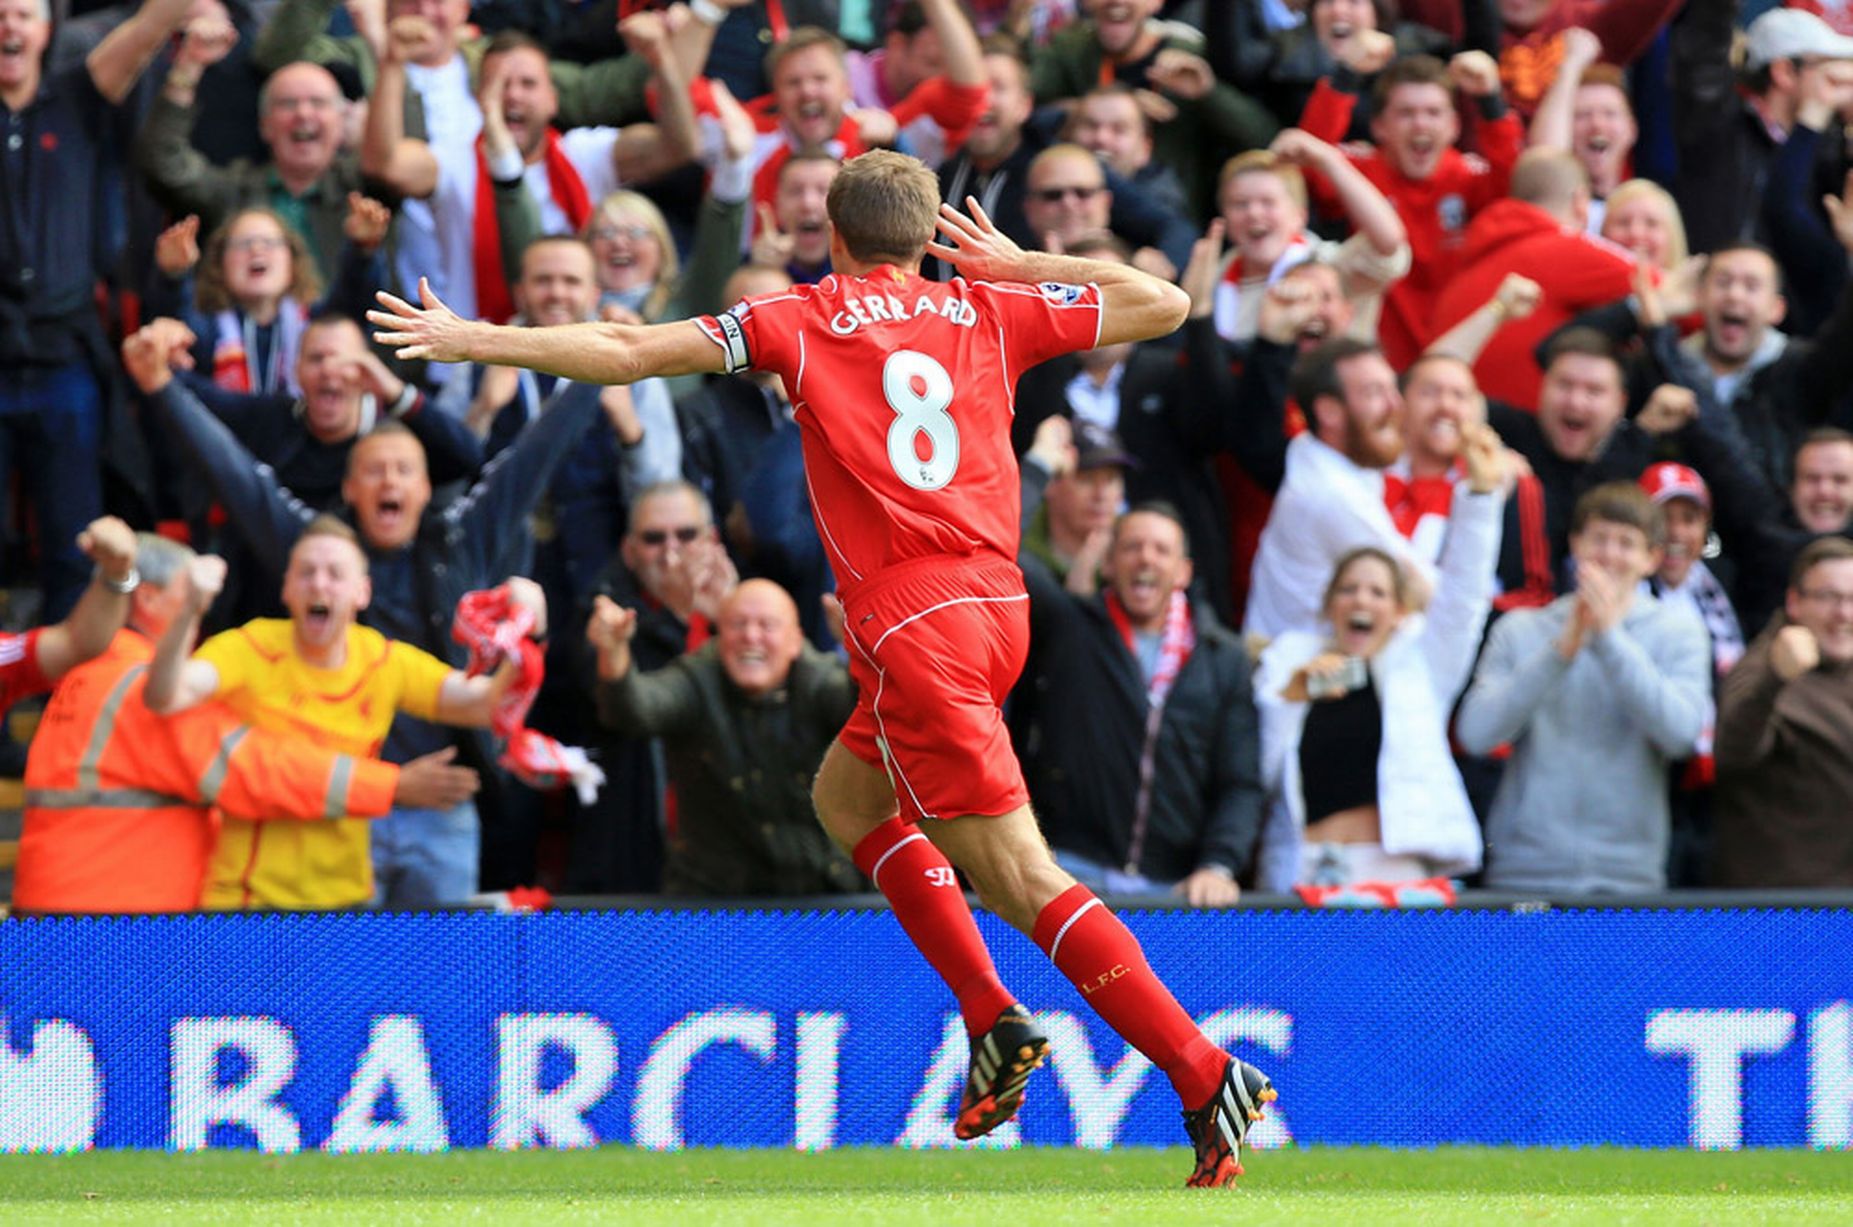 140927_ENG_Liverpool_v_Everton_1_1_Steven_Gerrard_celebrates